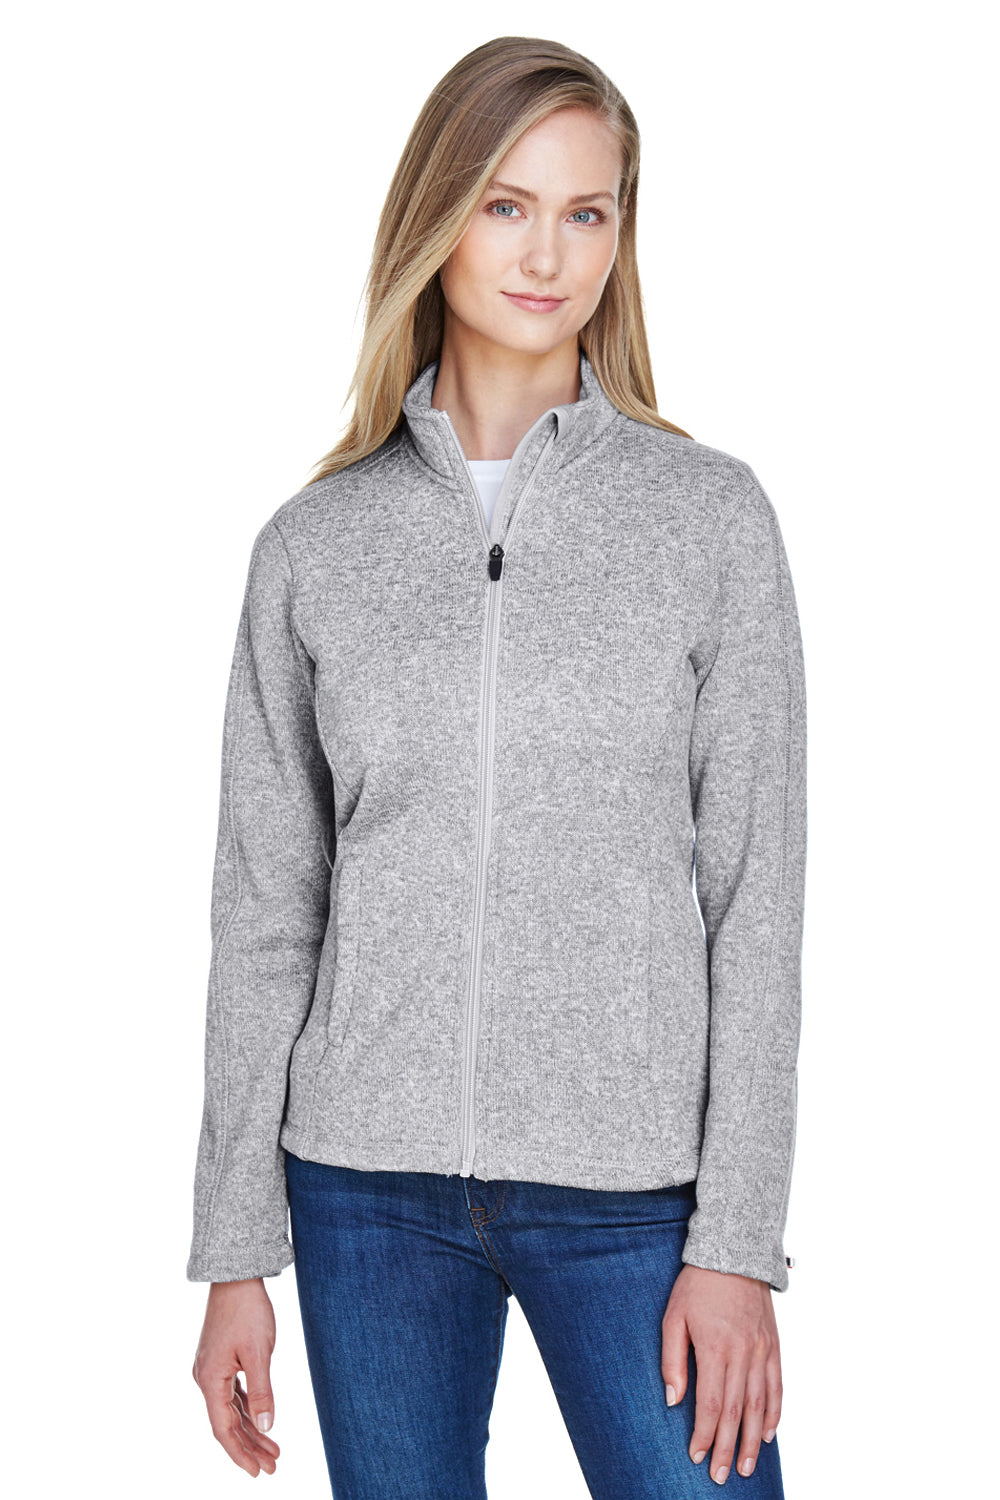 Devon & Jones DG793W Womens Bristol Full Zip Sweater Fleece Jacket Grey Front